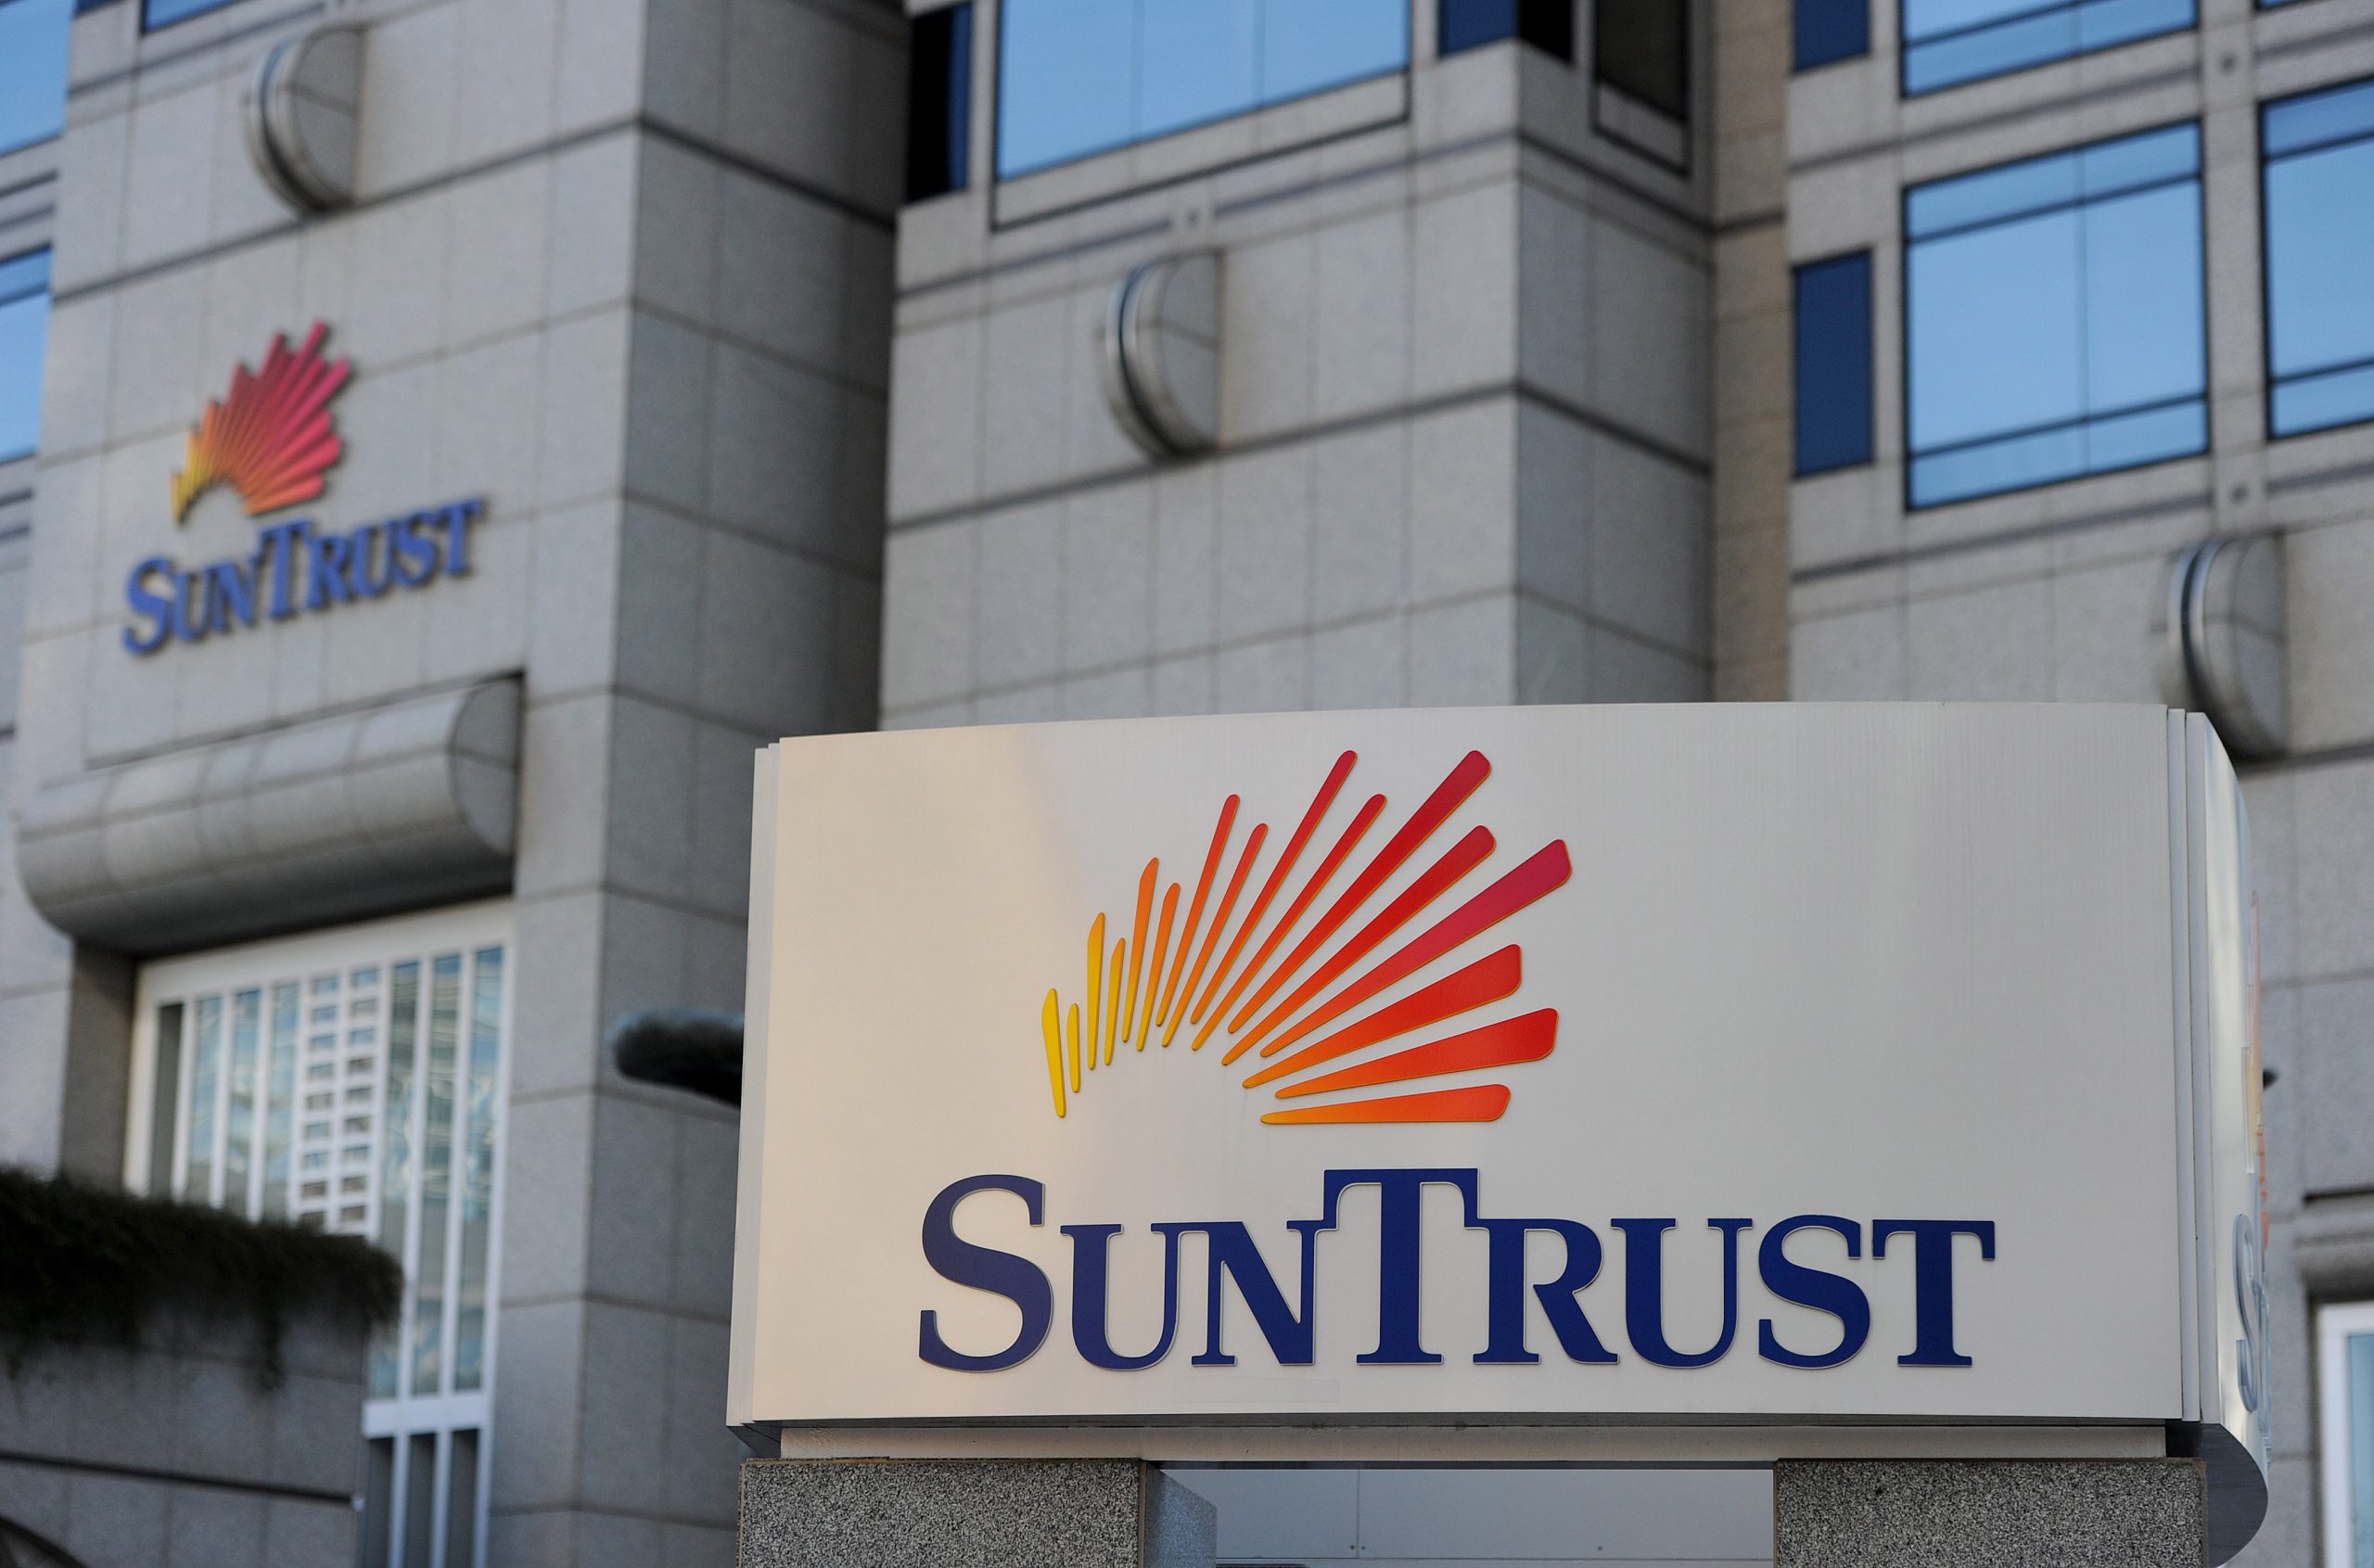 SunTrust Bank faces multi-million dollar lawsuit over contract dispute